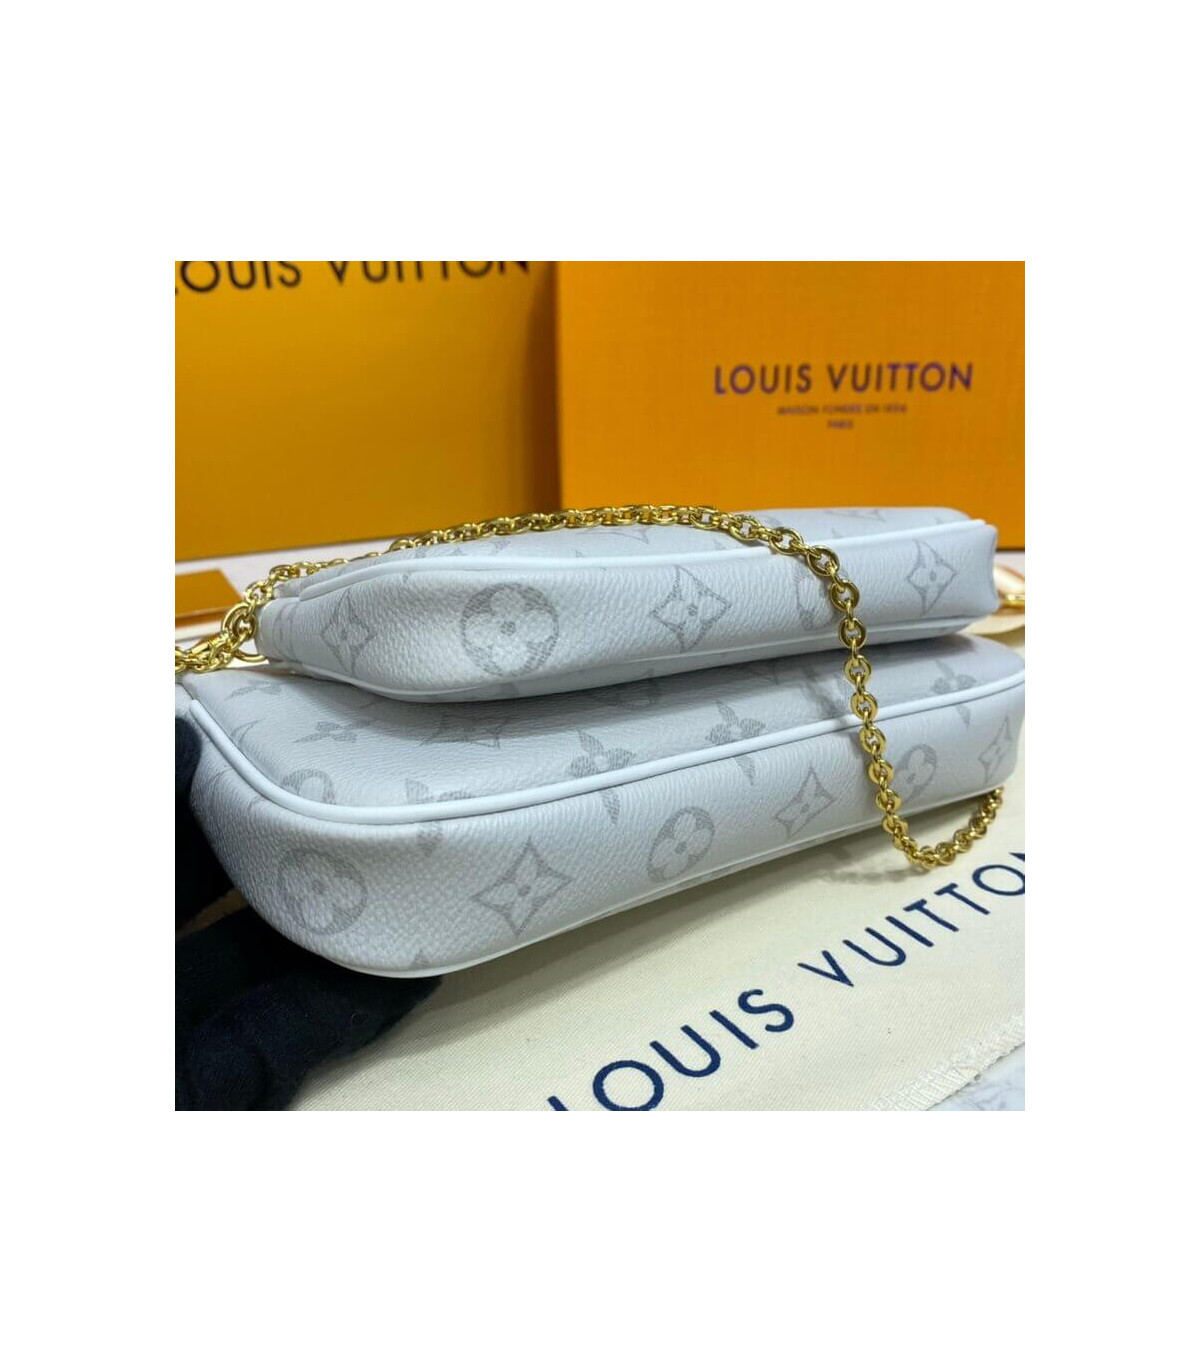 Brățări femei Louis Vuitton - cumpărați pe Shopsy